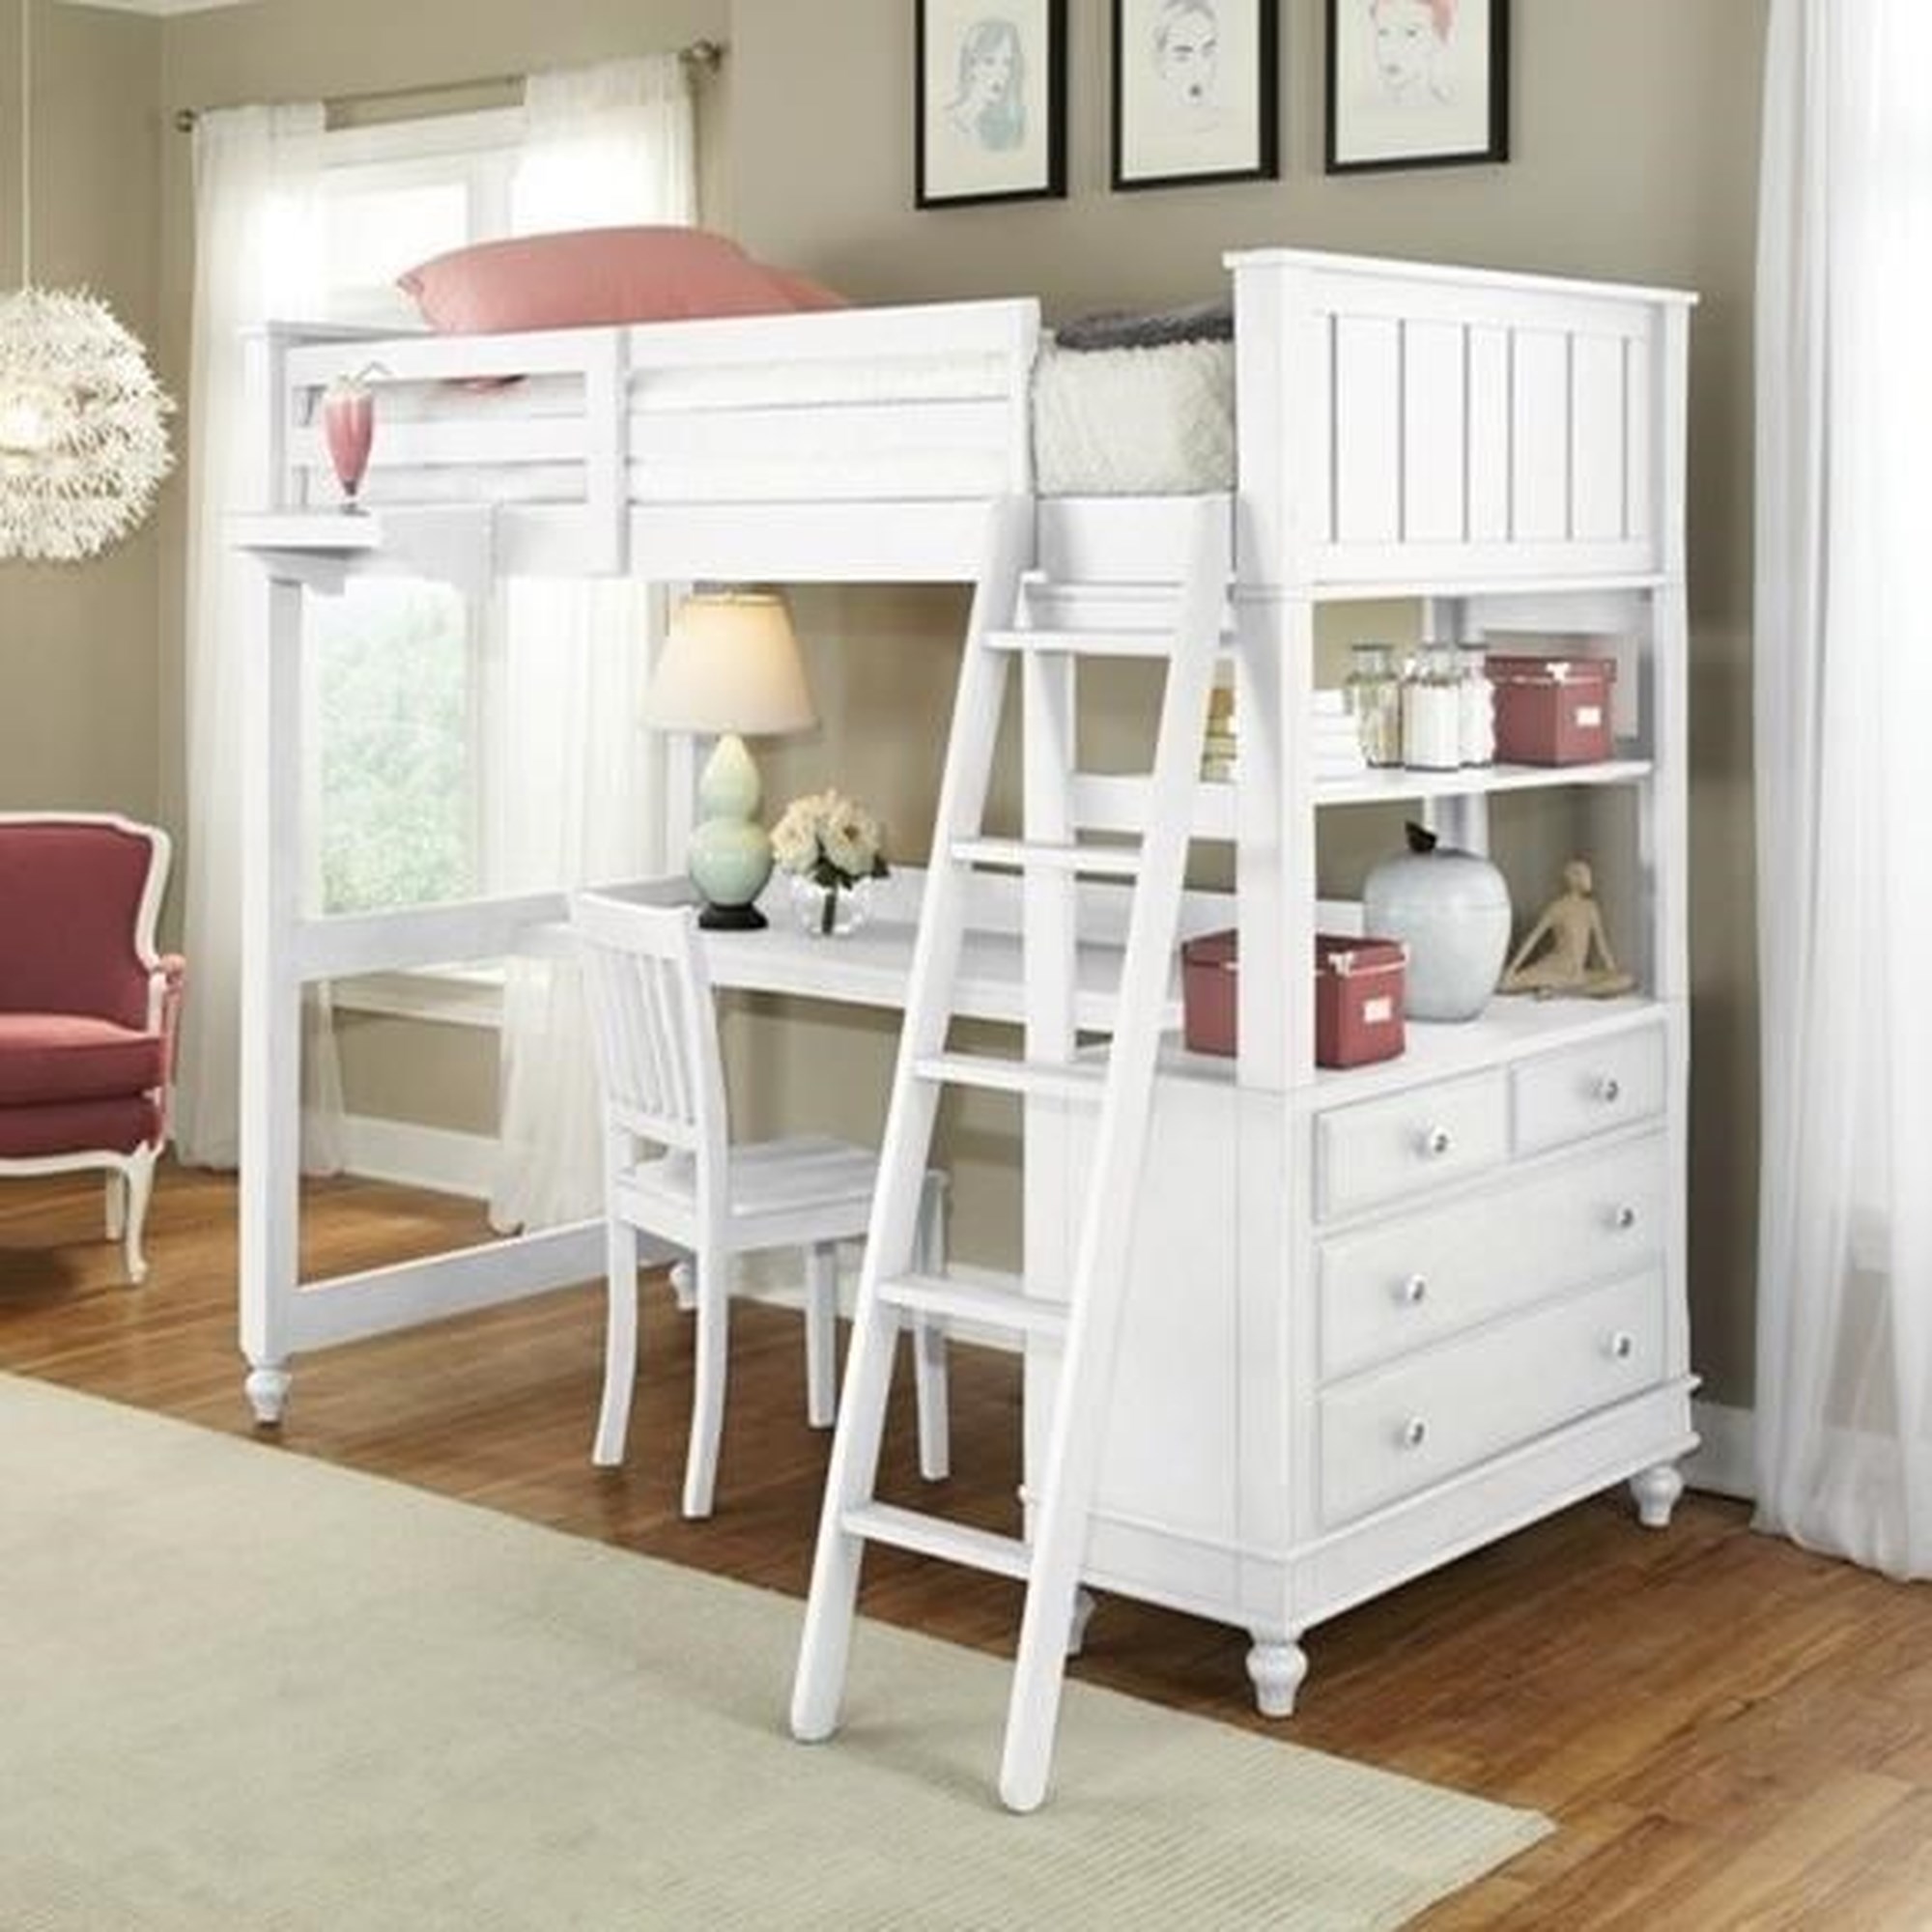 Wood Loft Bed w/ Desk Storage Cabinet Bookshelf Bedroom Sets Twin Size Bed  Frame